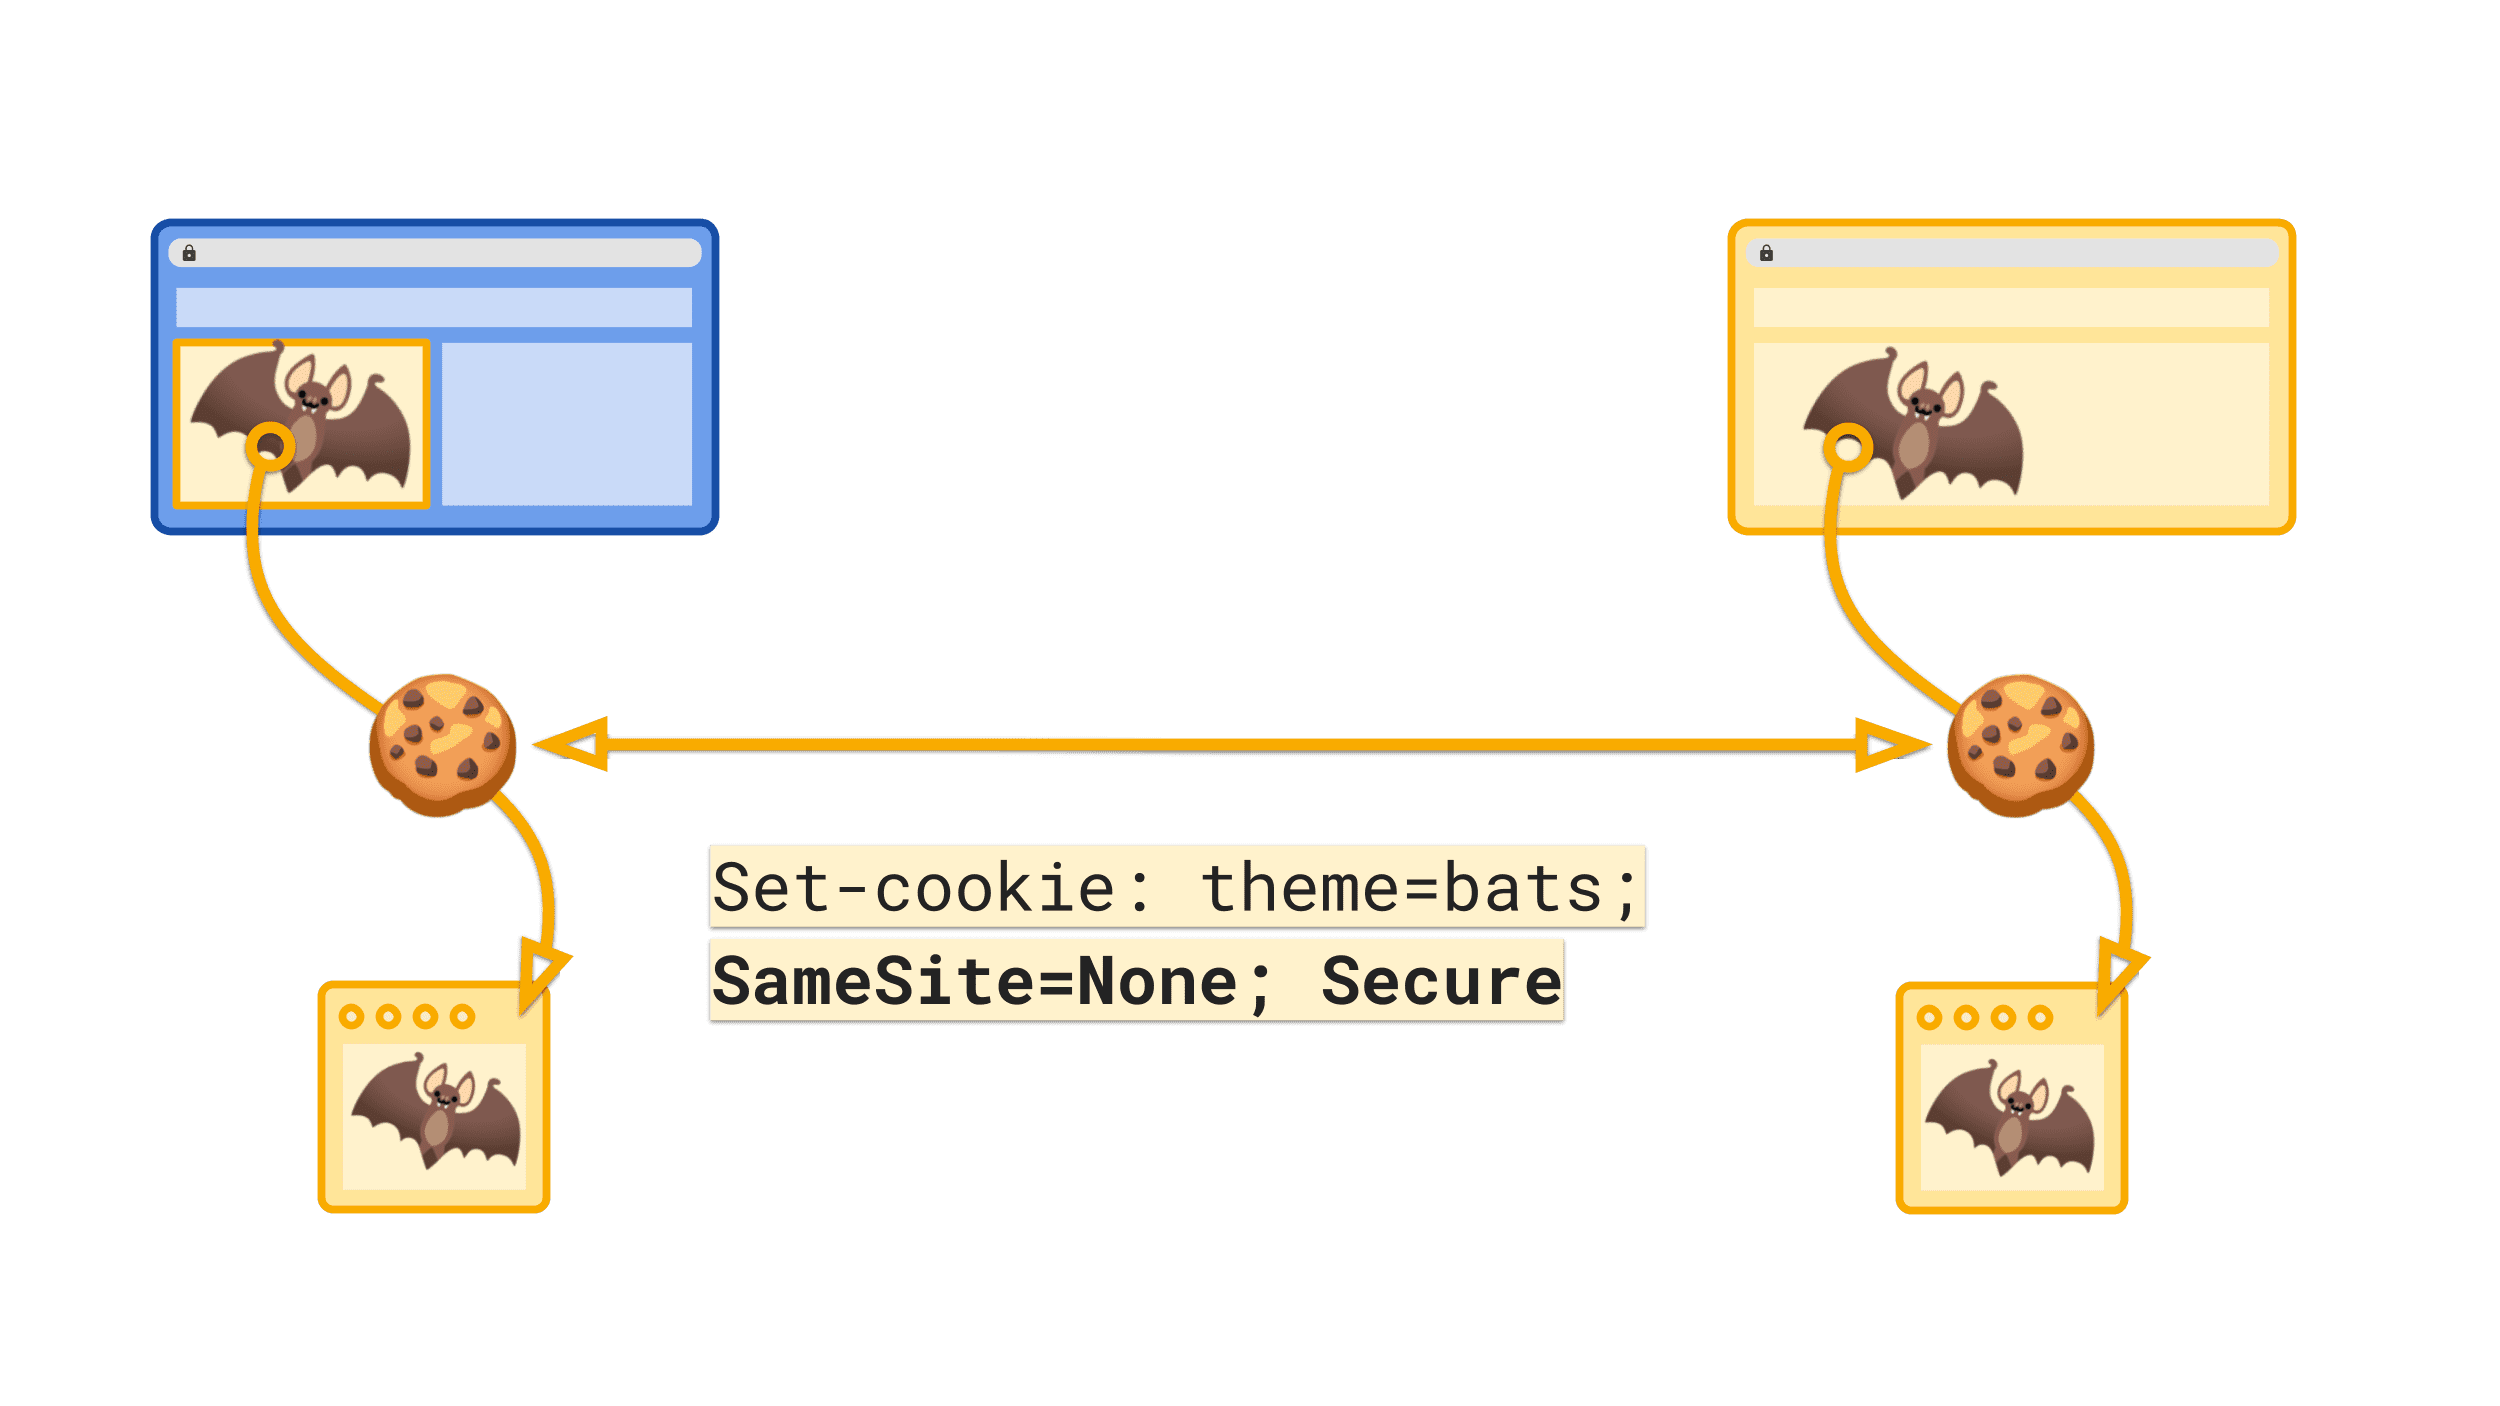 明示的な SameSite=None 値を指定すると、クロスサイト コンテキストで Cookie が送信されるようにマーク付けされる